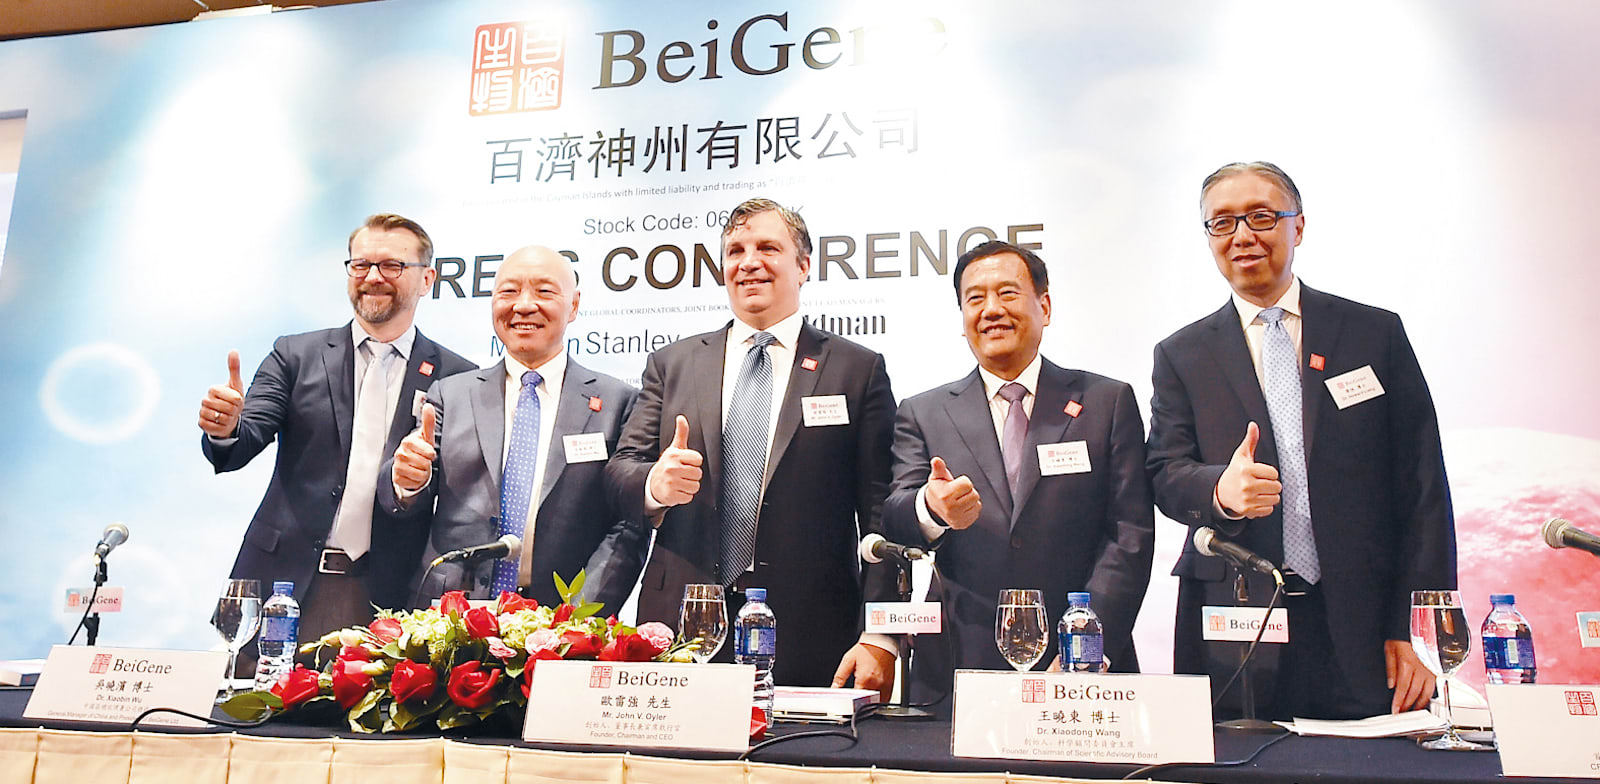 המייסדים וונג ואוילר (במרכז) בהנפקת החברה בהונג קונג, 2018 / צילום: Reuters, Gcmt